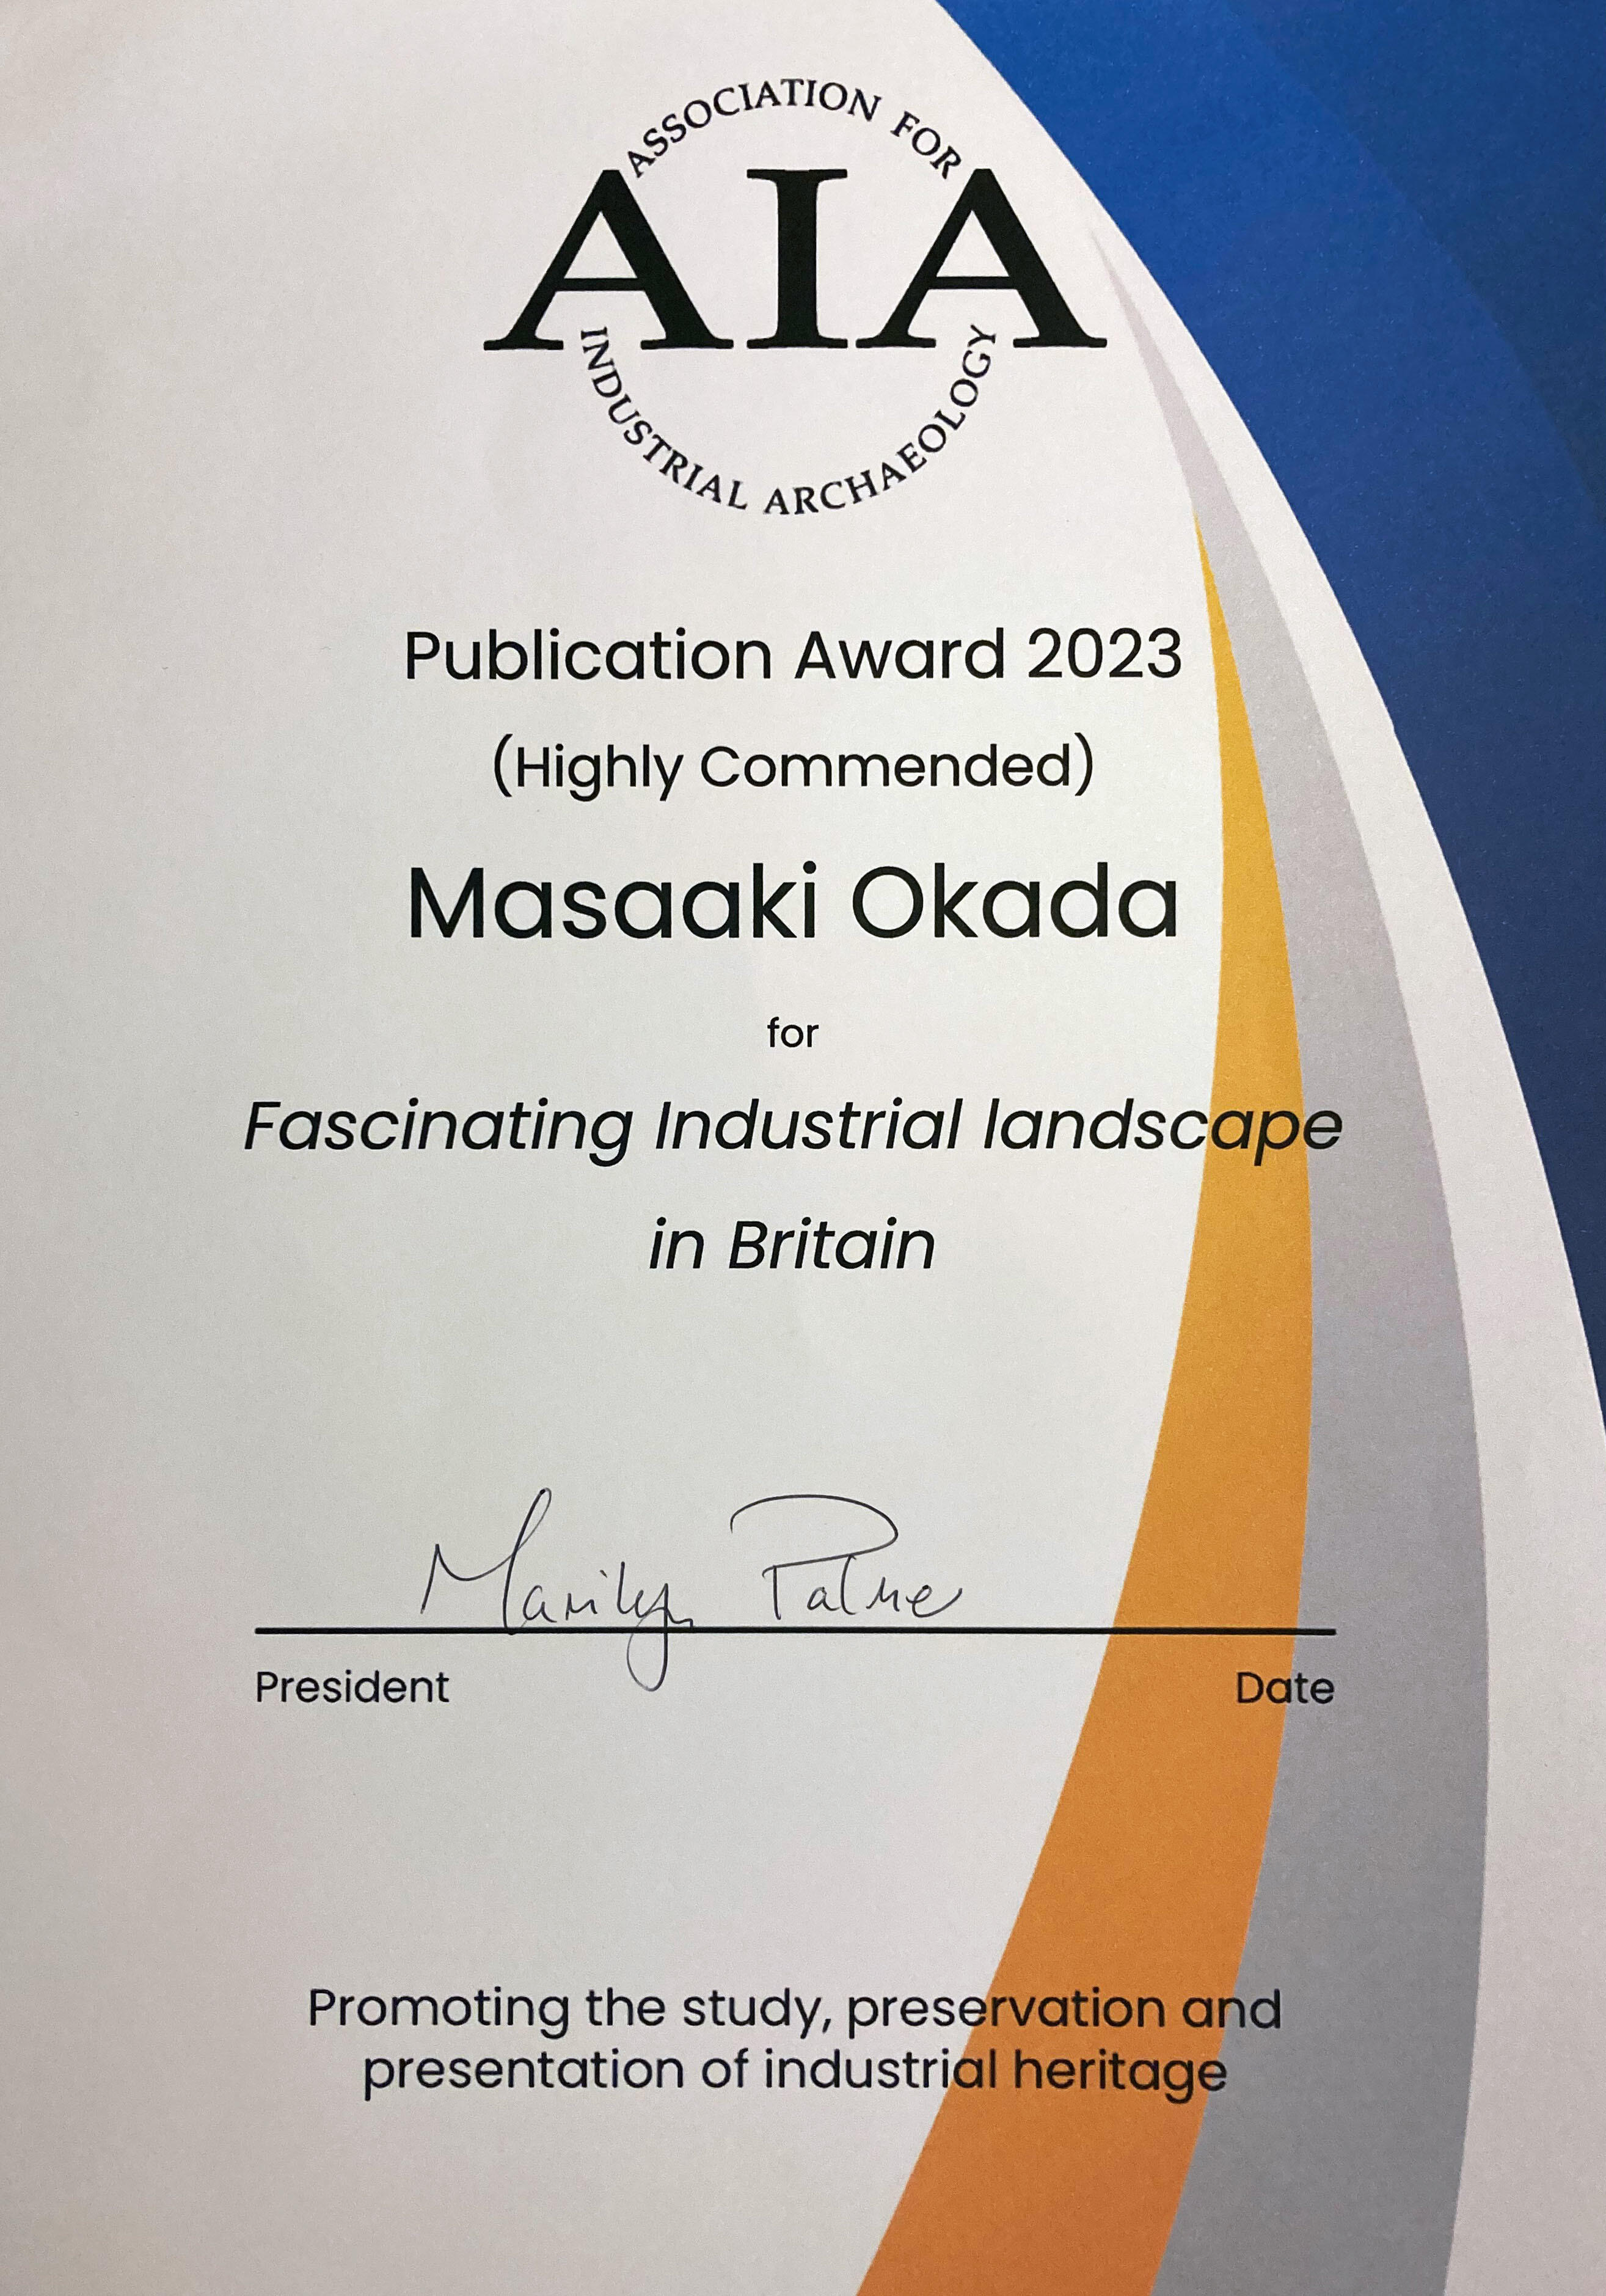 社会環境工学科 岡田昌彰 教授の著書が、イギリス産業考古学会で特別賞を受賞